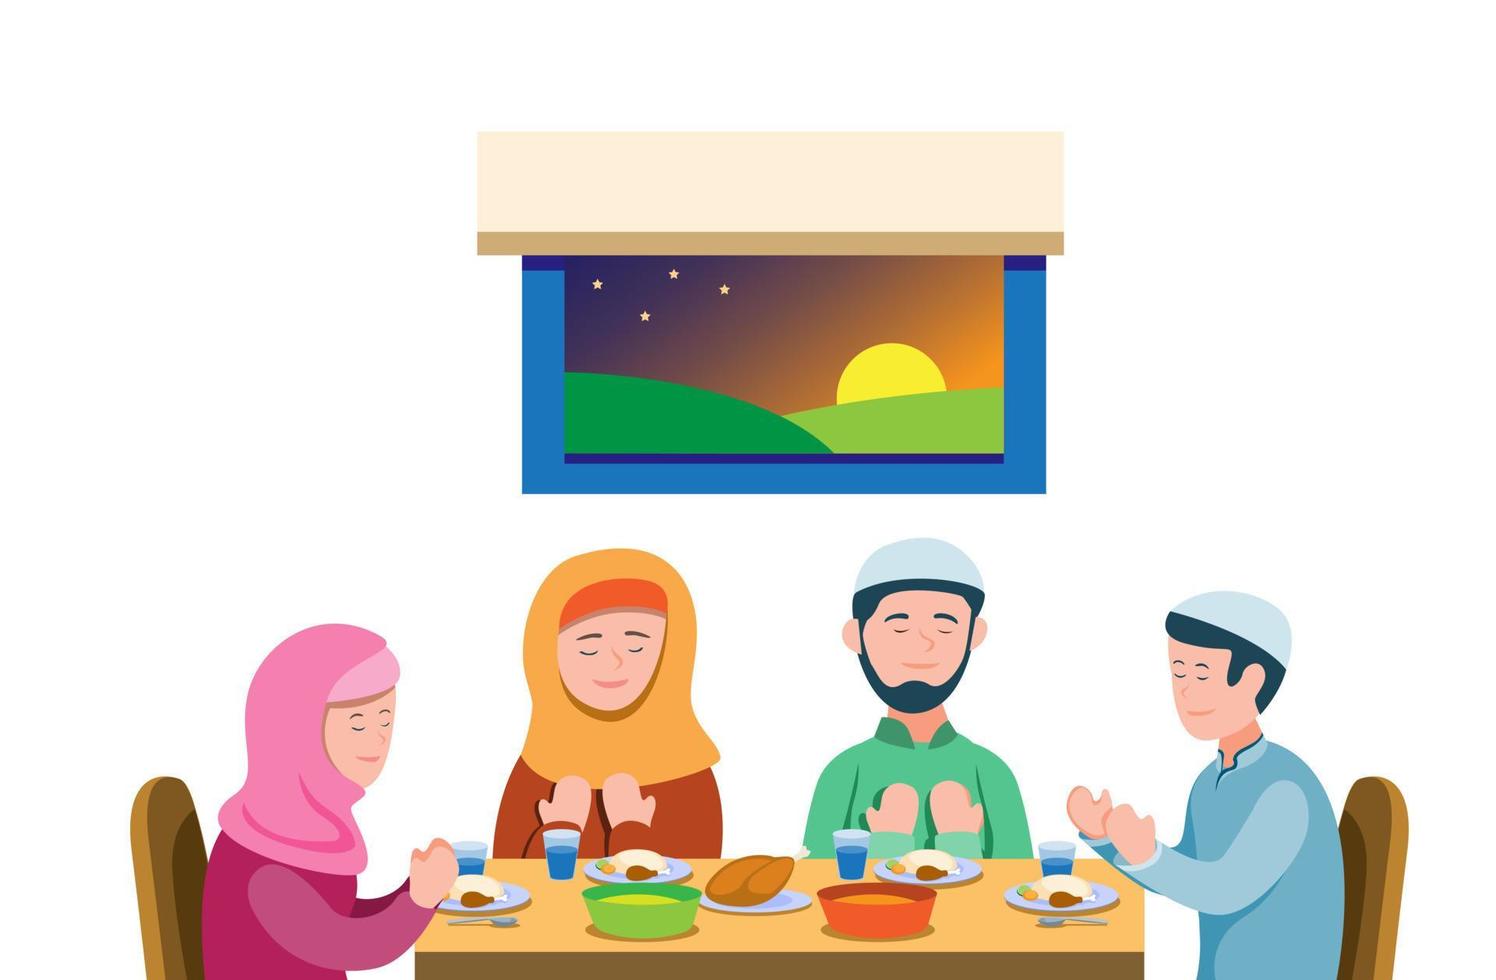 La familia musulmana reza antes de la comida para romper el ayuno, la actividad religiosa del islam en la temporada de Ramadán. vector de ilustración plana de dibujos animados aislado en fondo blanco